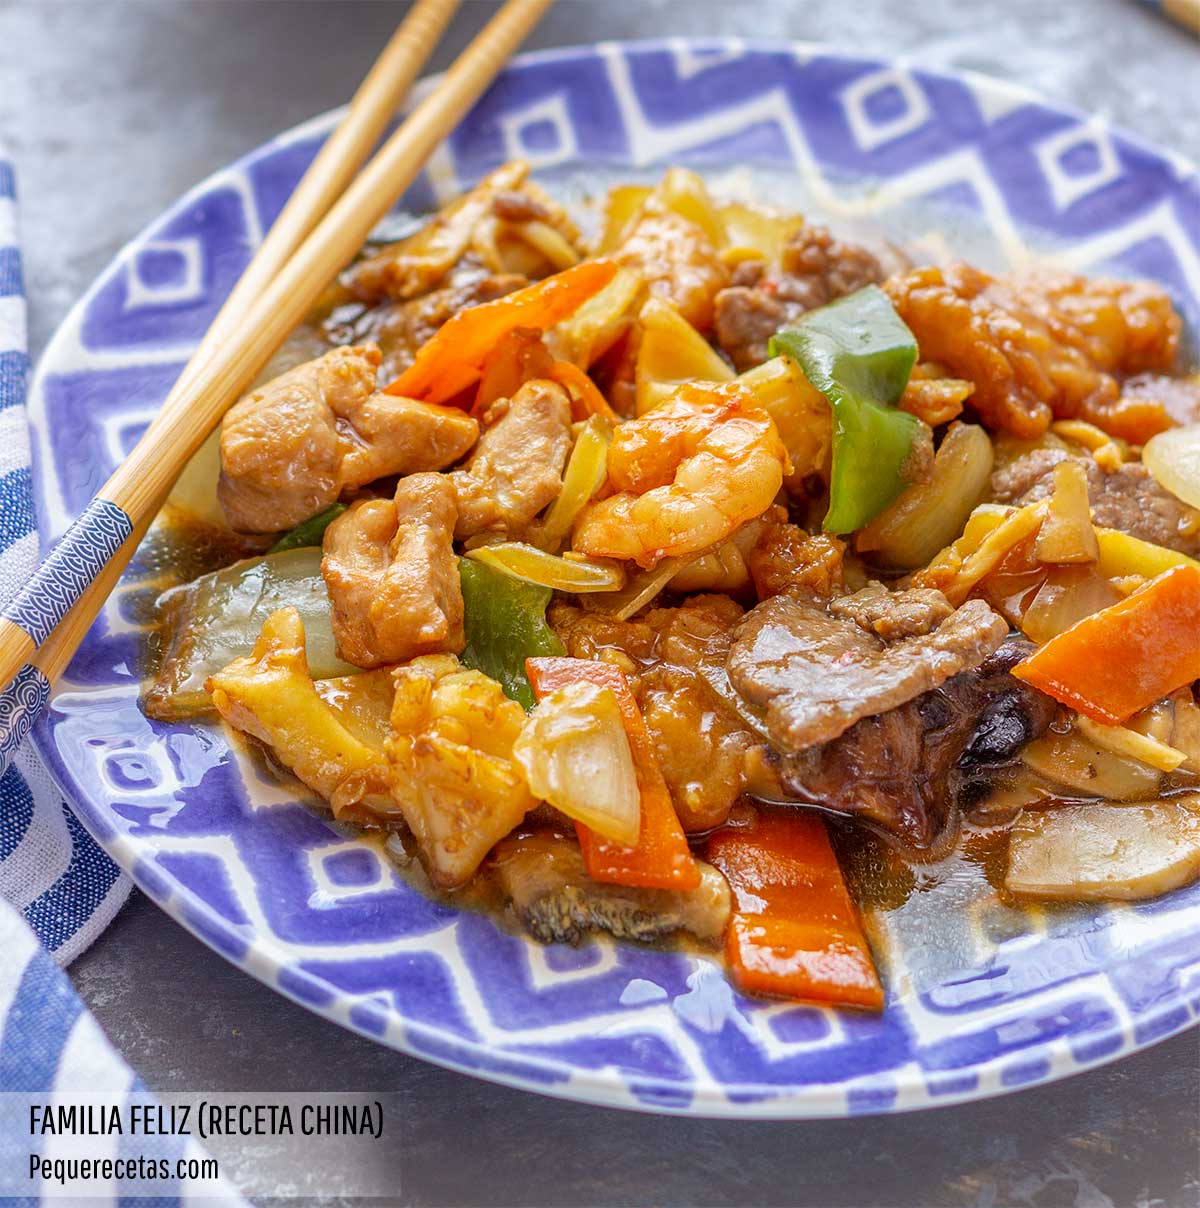 Receta de Familia Feliz china (qué es y cómo hacer este plato chino  tradicional) - PequeRecetas